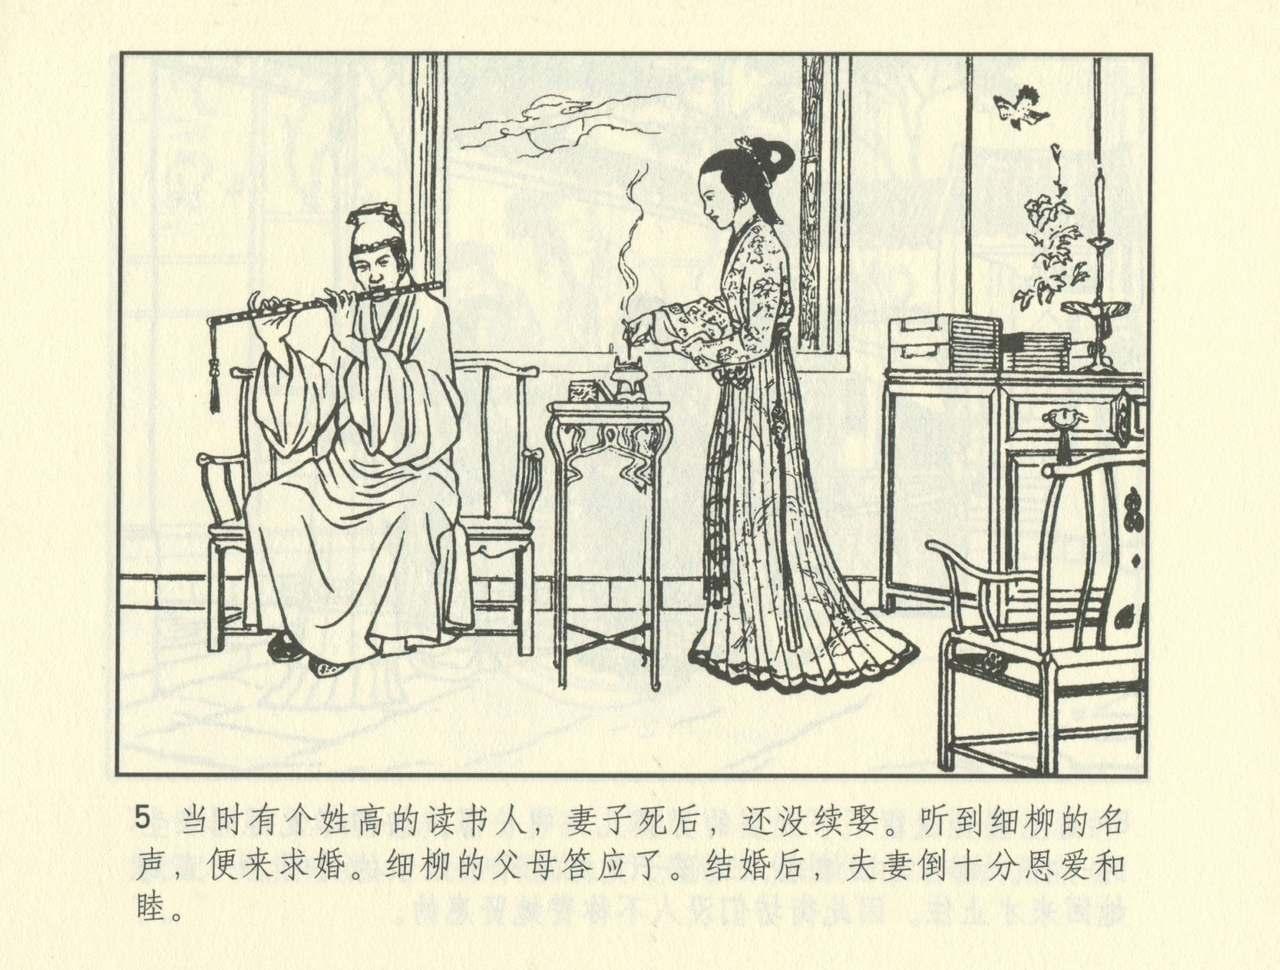 聊斋志异 张玮等绘 天津人民美术出版社 卷二十一 ~ 三十 477